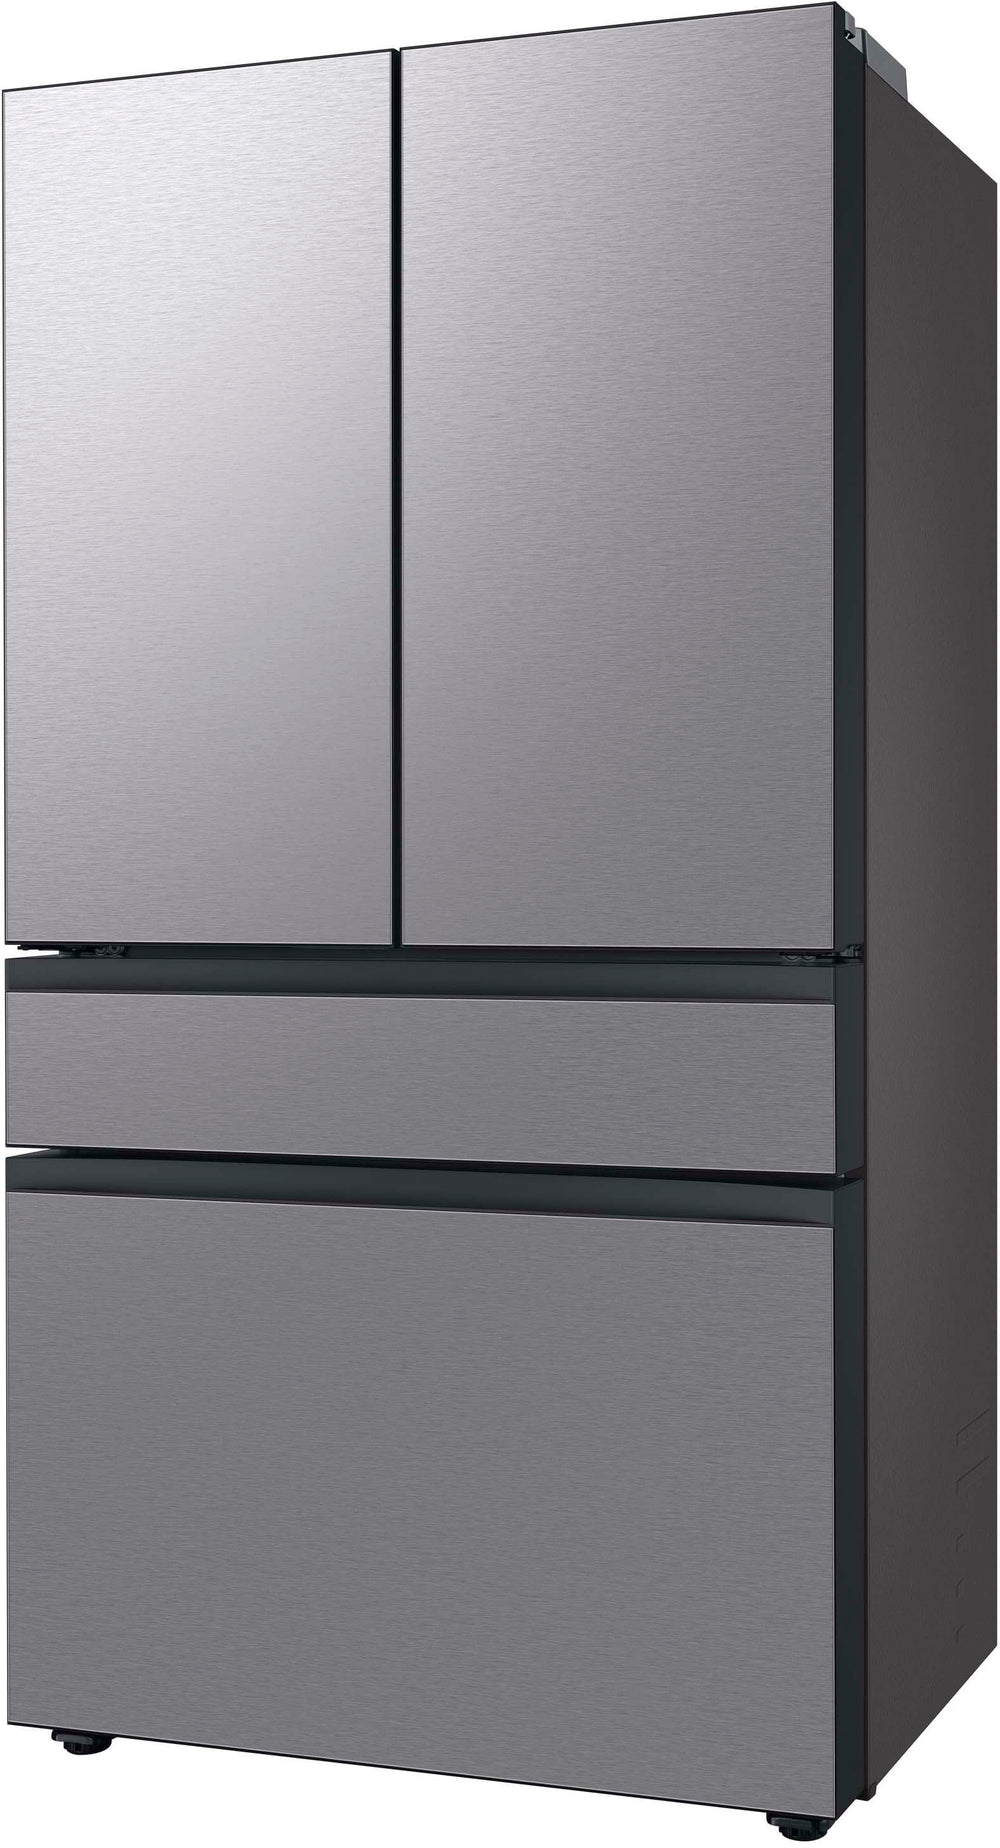 Samsung - Bespoke 23 cu. ft. Counter Depth 4-Door French Door Refrigerator with Beverage Center - Stainless steel_1